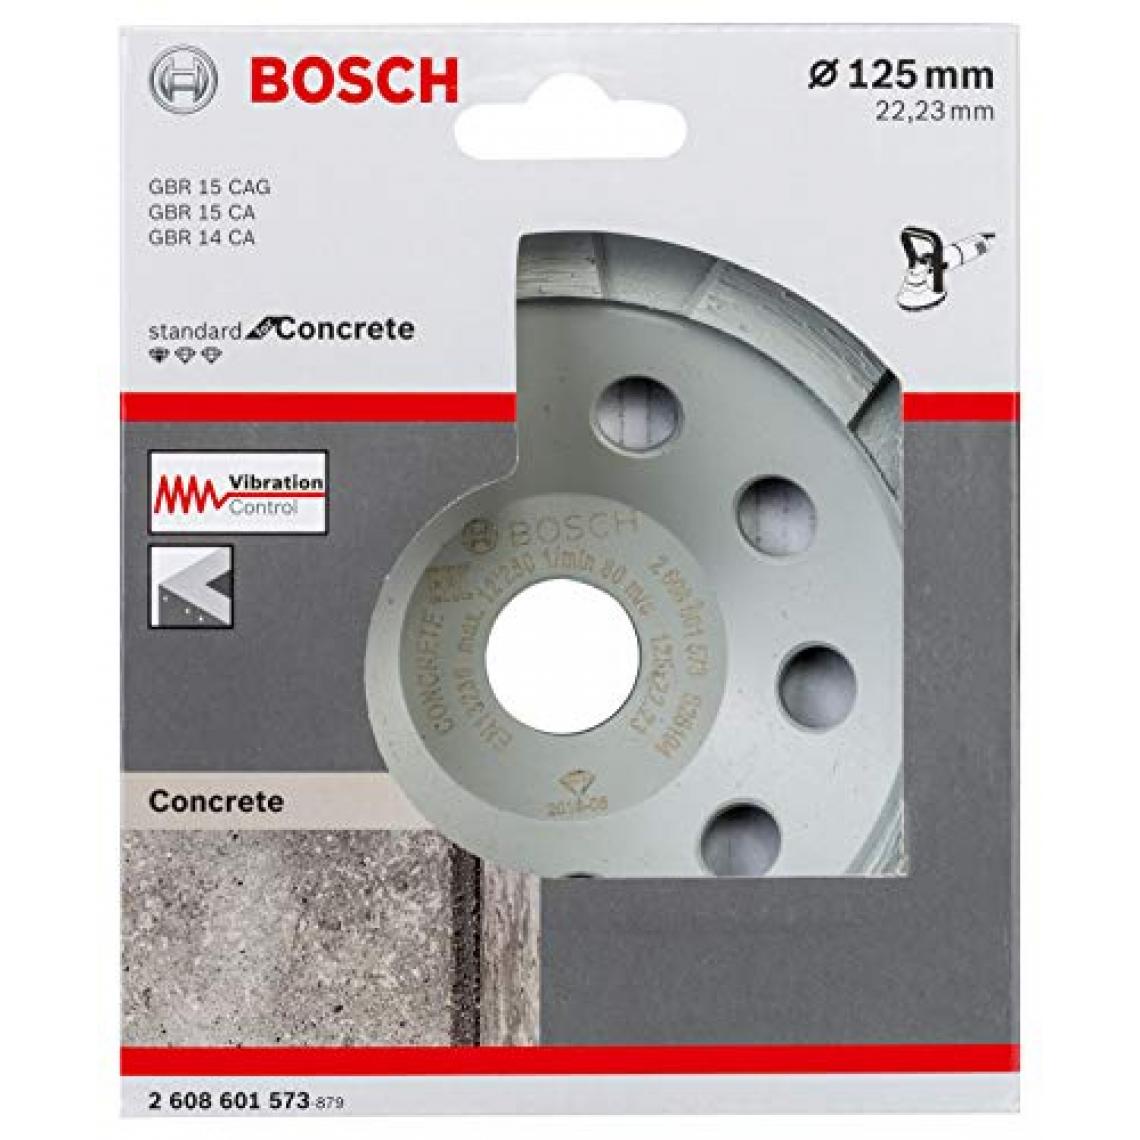 Bosch - 2608601573 Meules Diamant Standard for Concrete (pour Béton, 125 x 22,23 x 5 mm, Accessoires Meuleuse Angulaire) - Accessoires ponçage